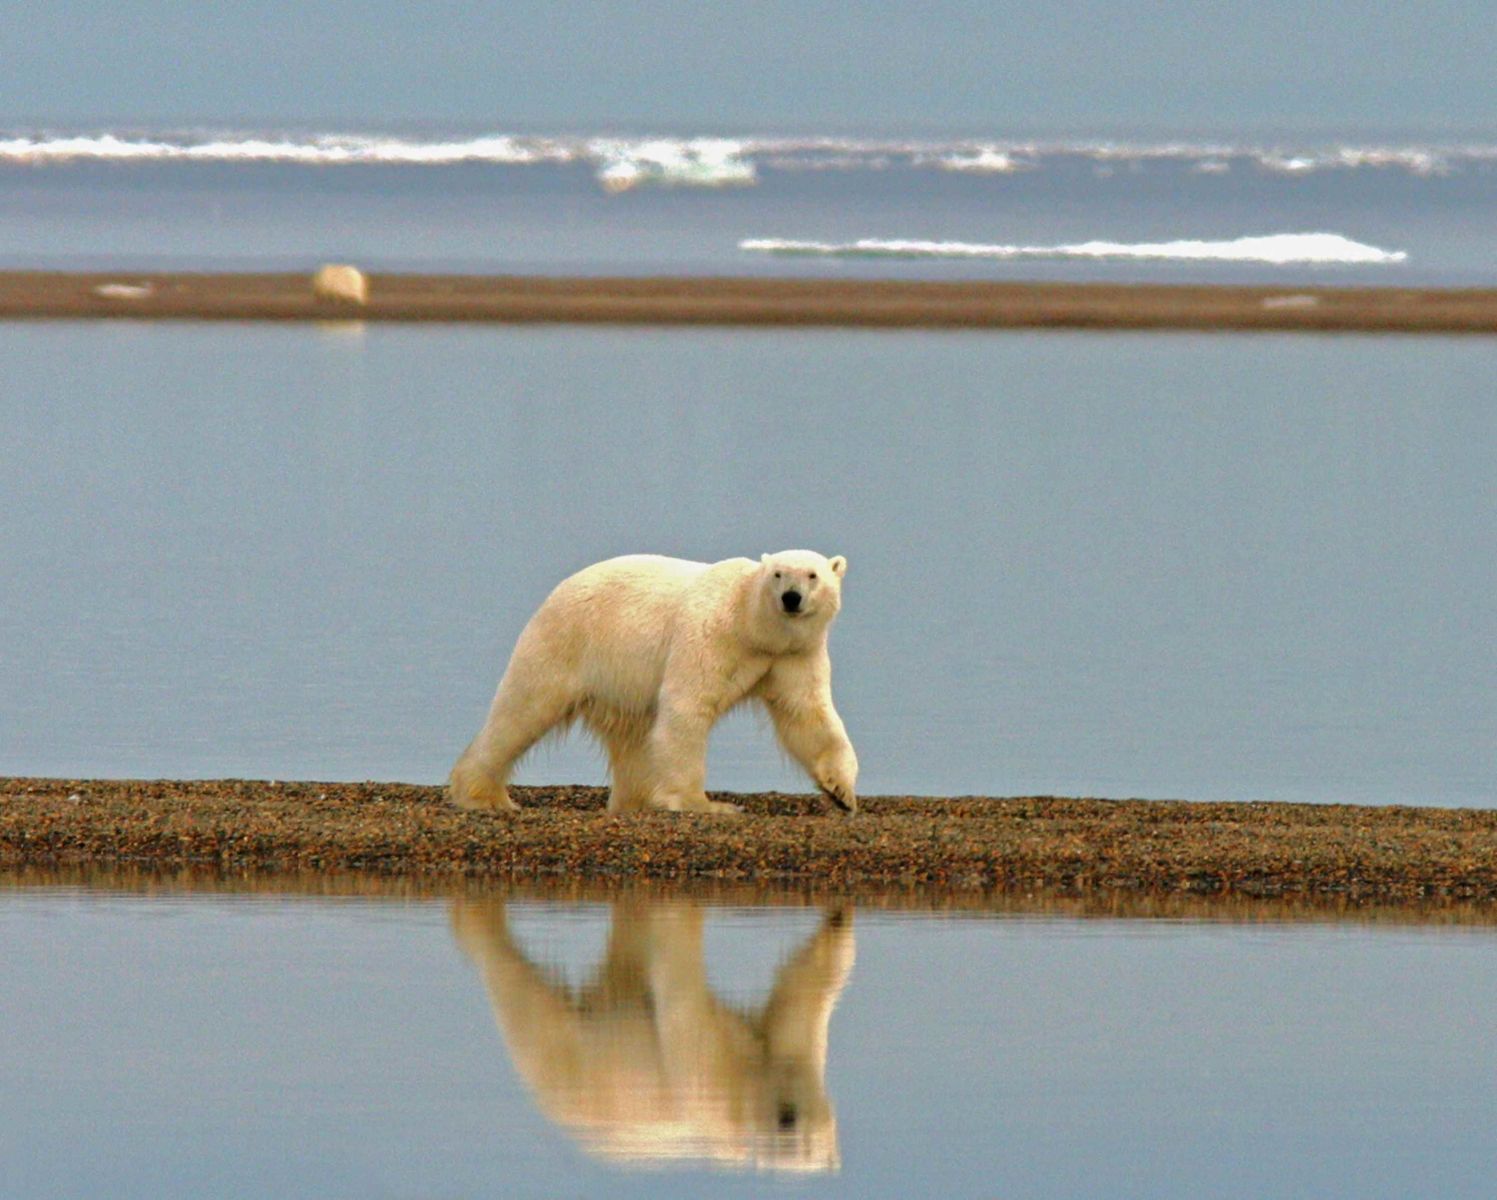 Oso polar: ¿dónde vive, qué come y por qué está en peligro de extinción?